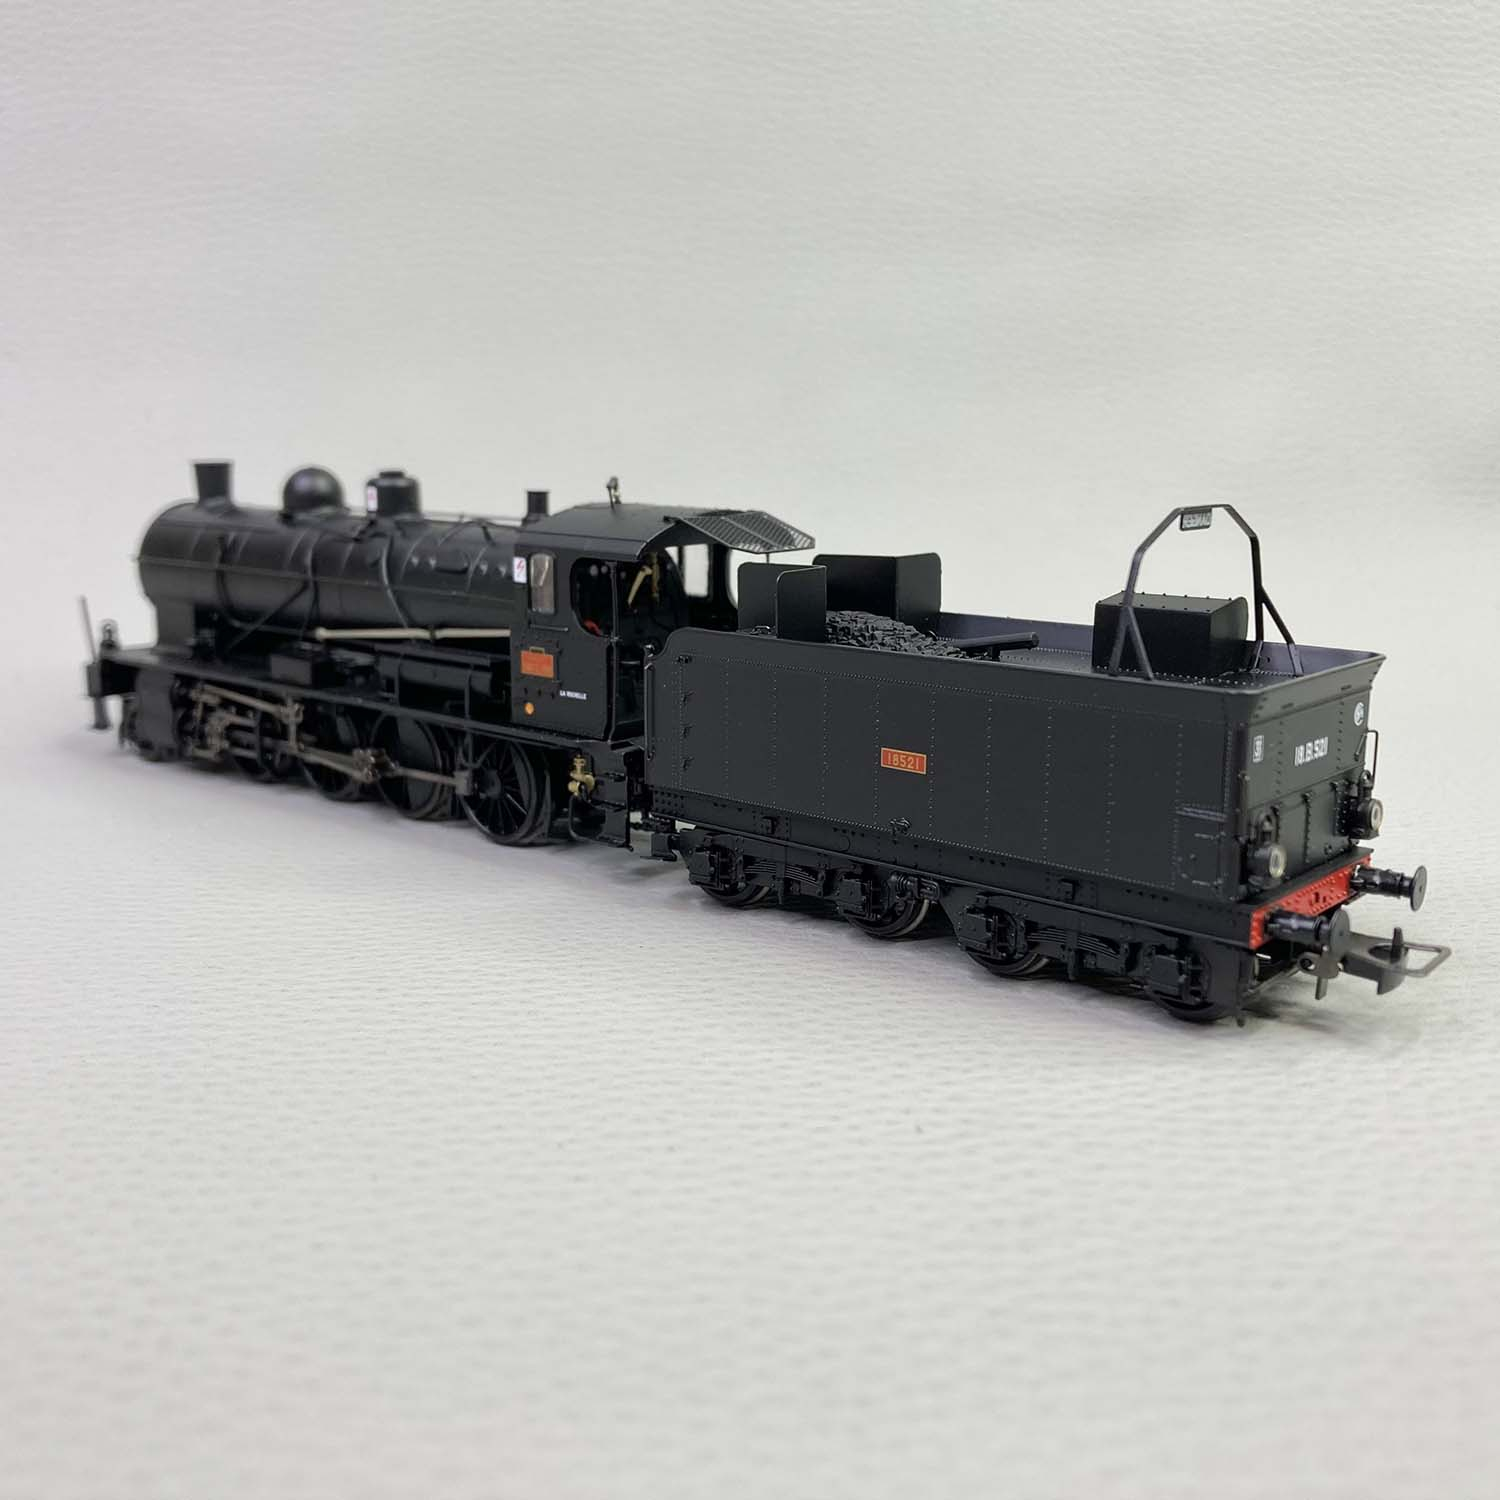 Train HO miniature, CC14015 JOUEF 2423, Les belles locomotives